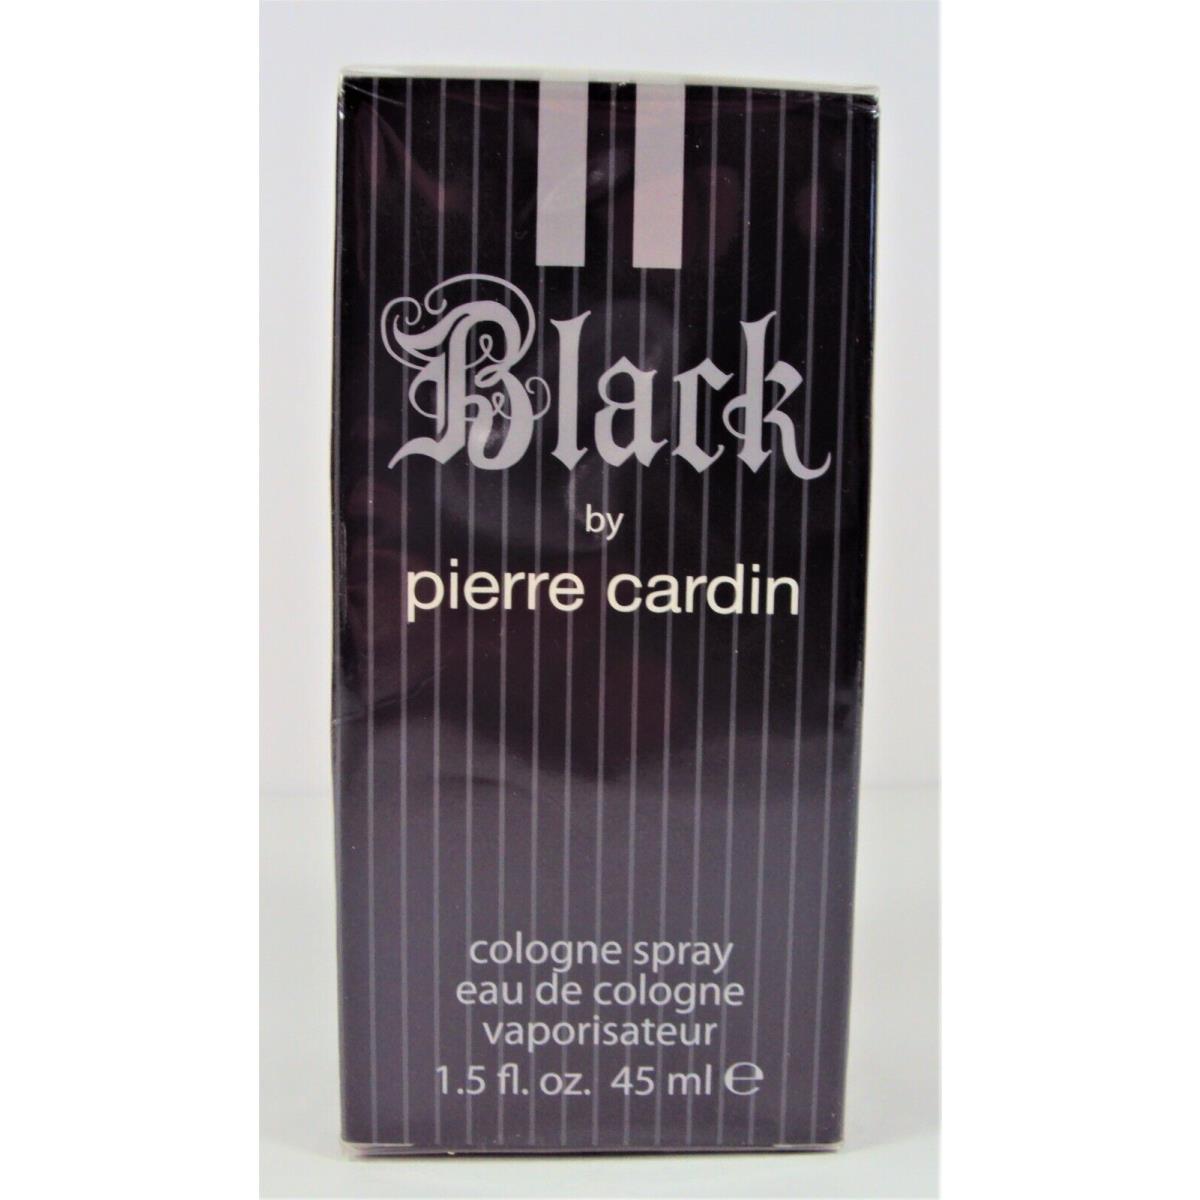 Pierre Cardin Black Cologne Spray by Five Star 1.5 oz / 45 ml